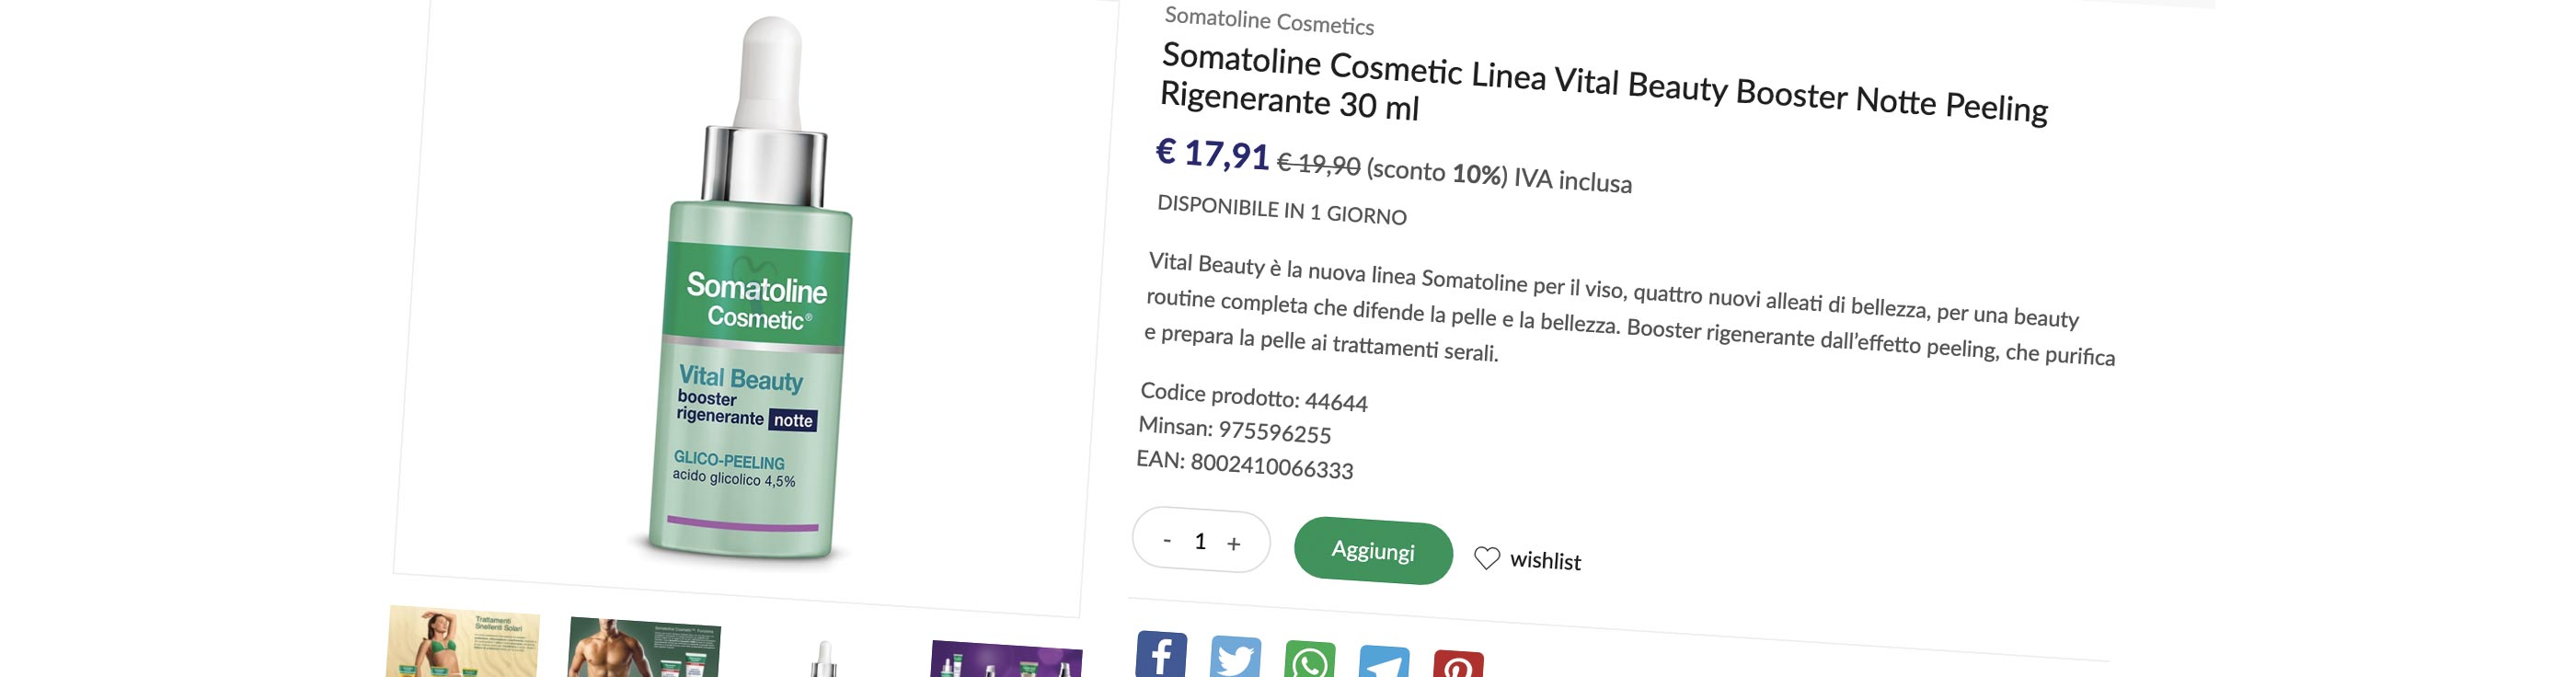 La banca dati per l'e-commerce della farmacie italiane